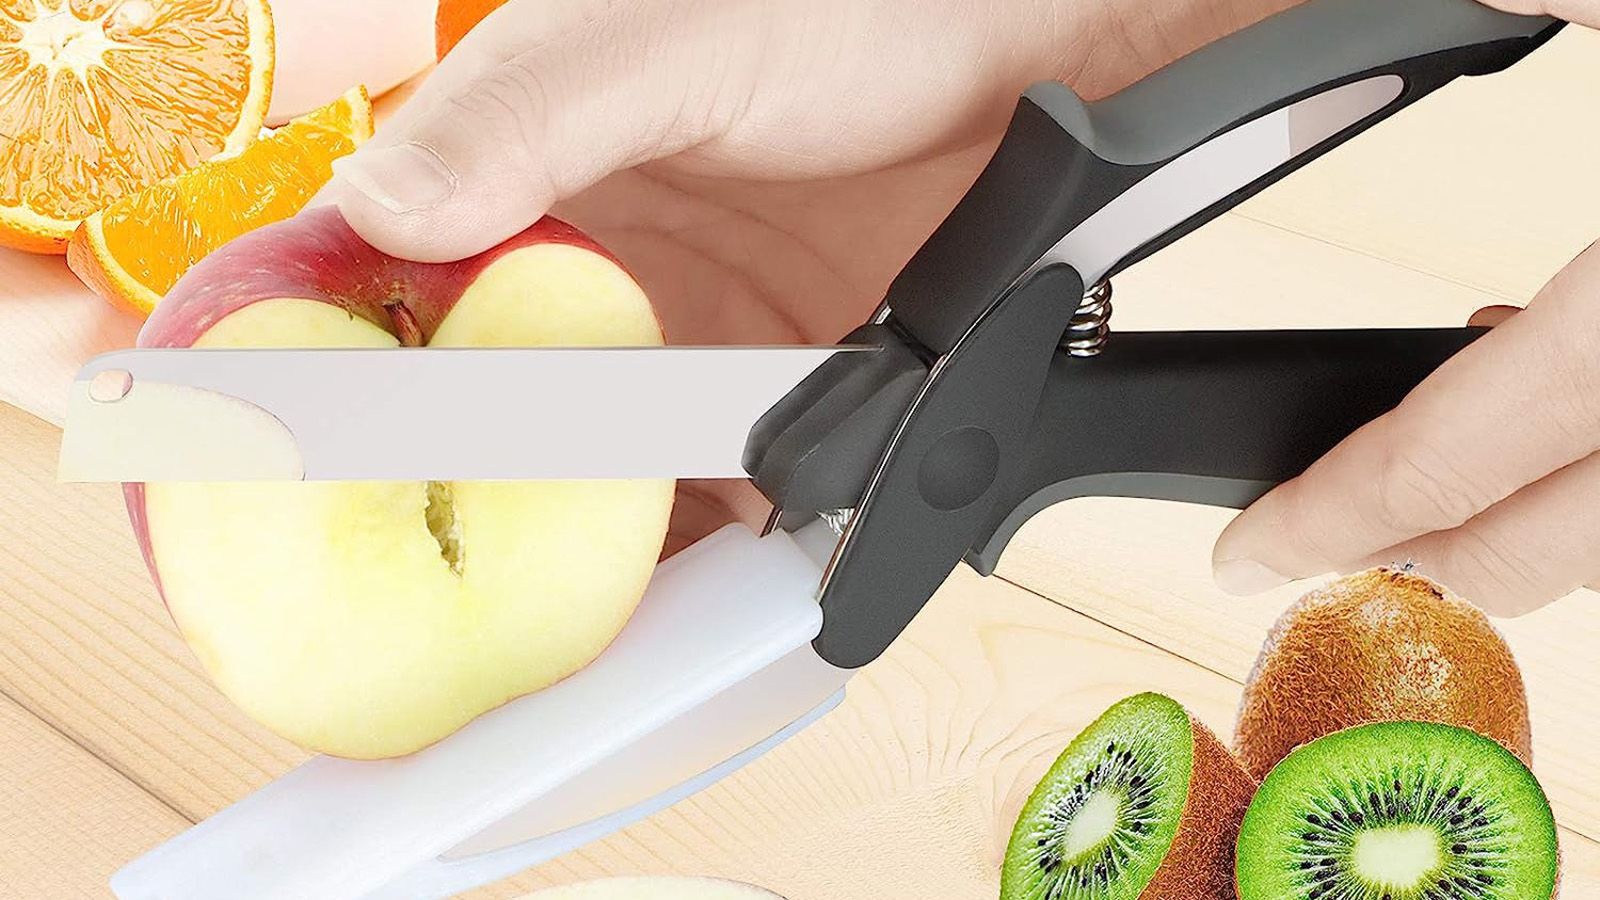 Smart Cutter 2 in 1 Knife and Cutting Board